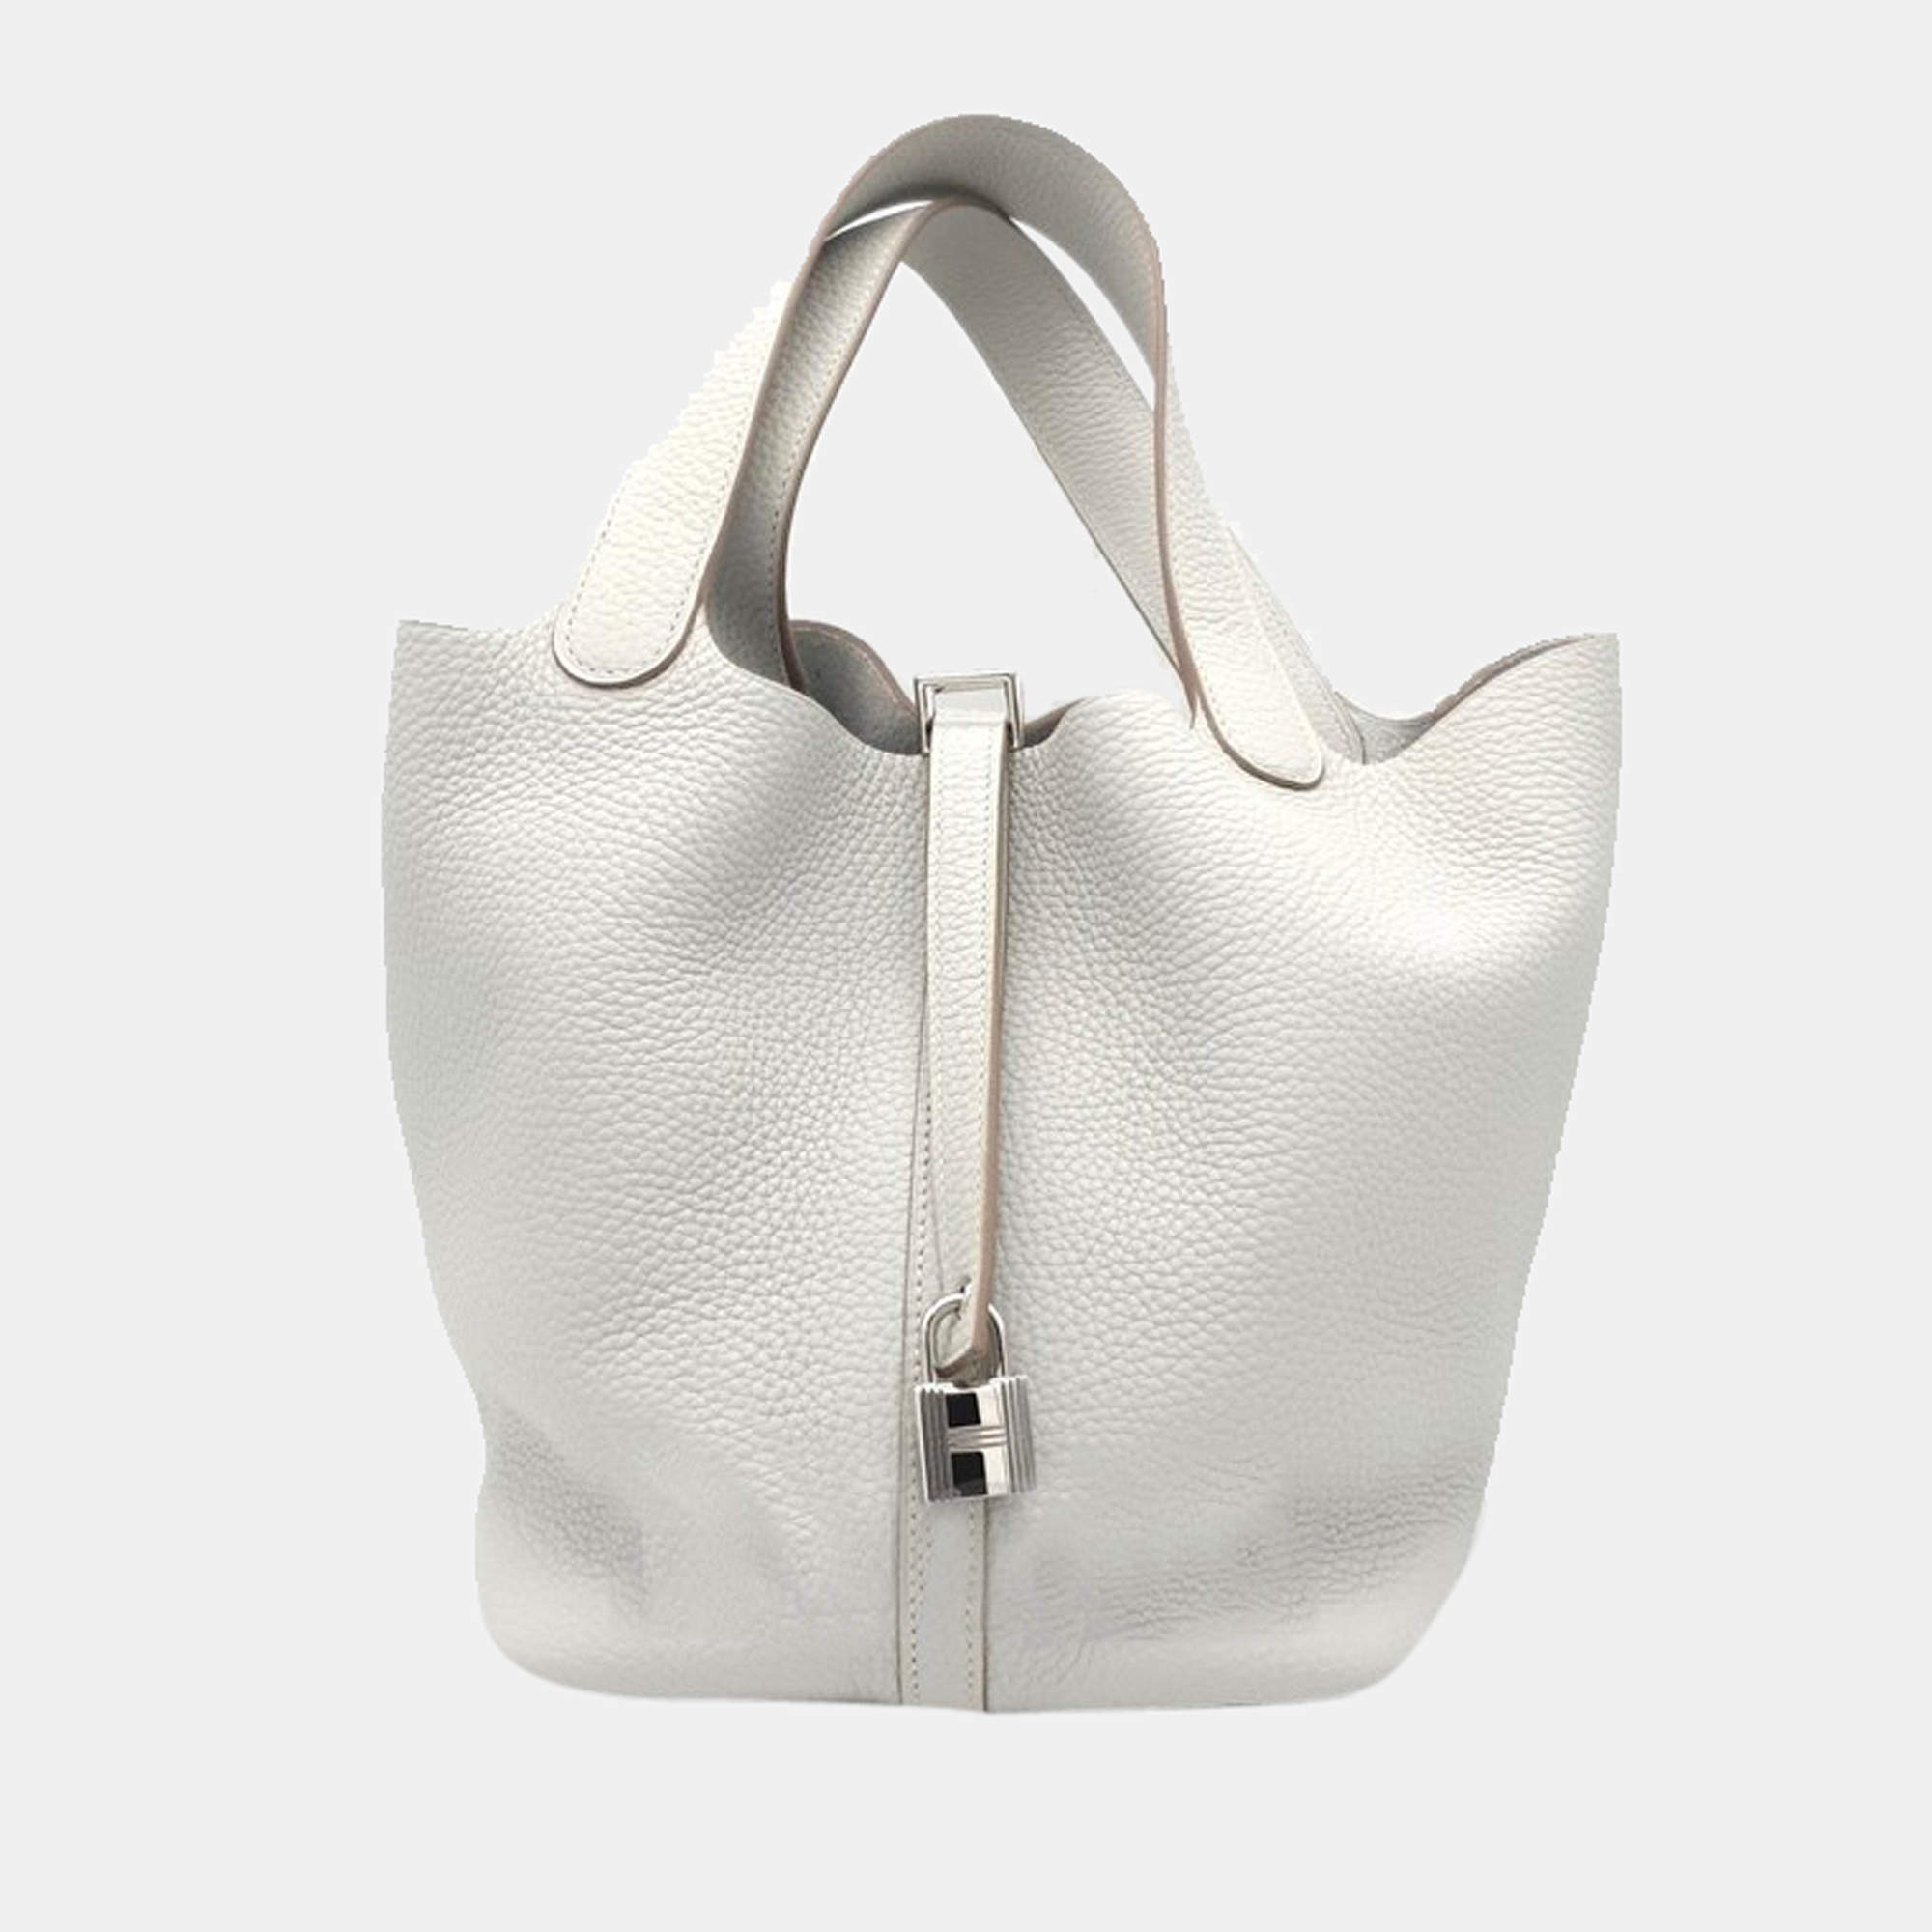 Chanel Deauville Raffia Tote Bag, New in Dustbag